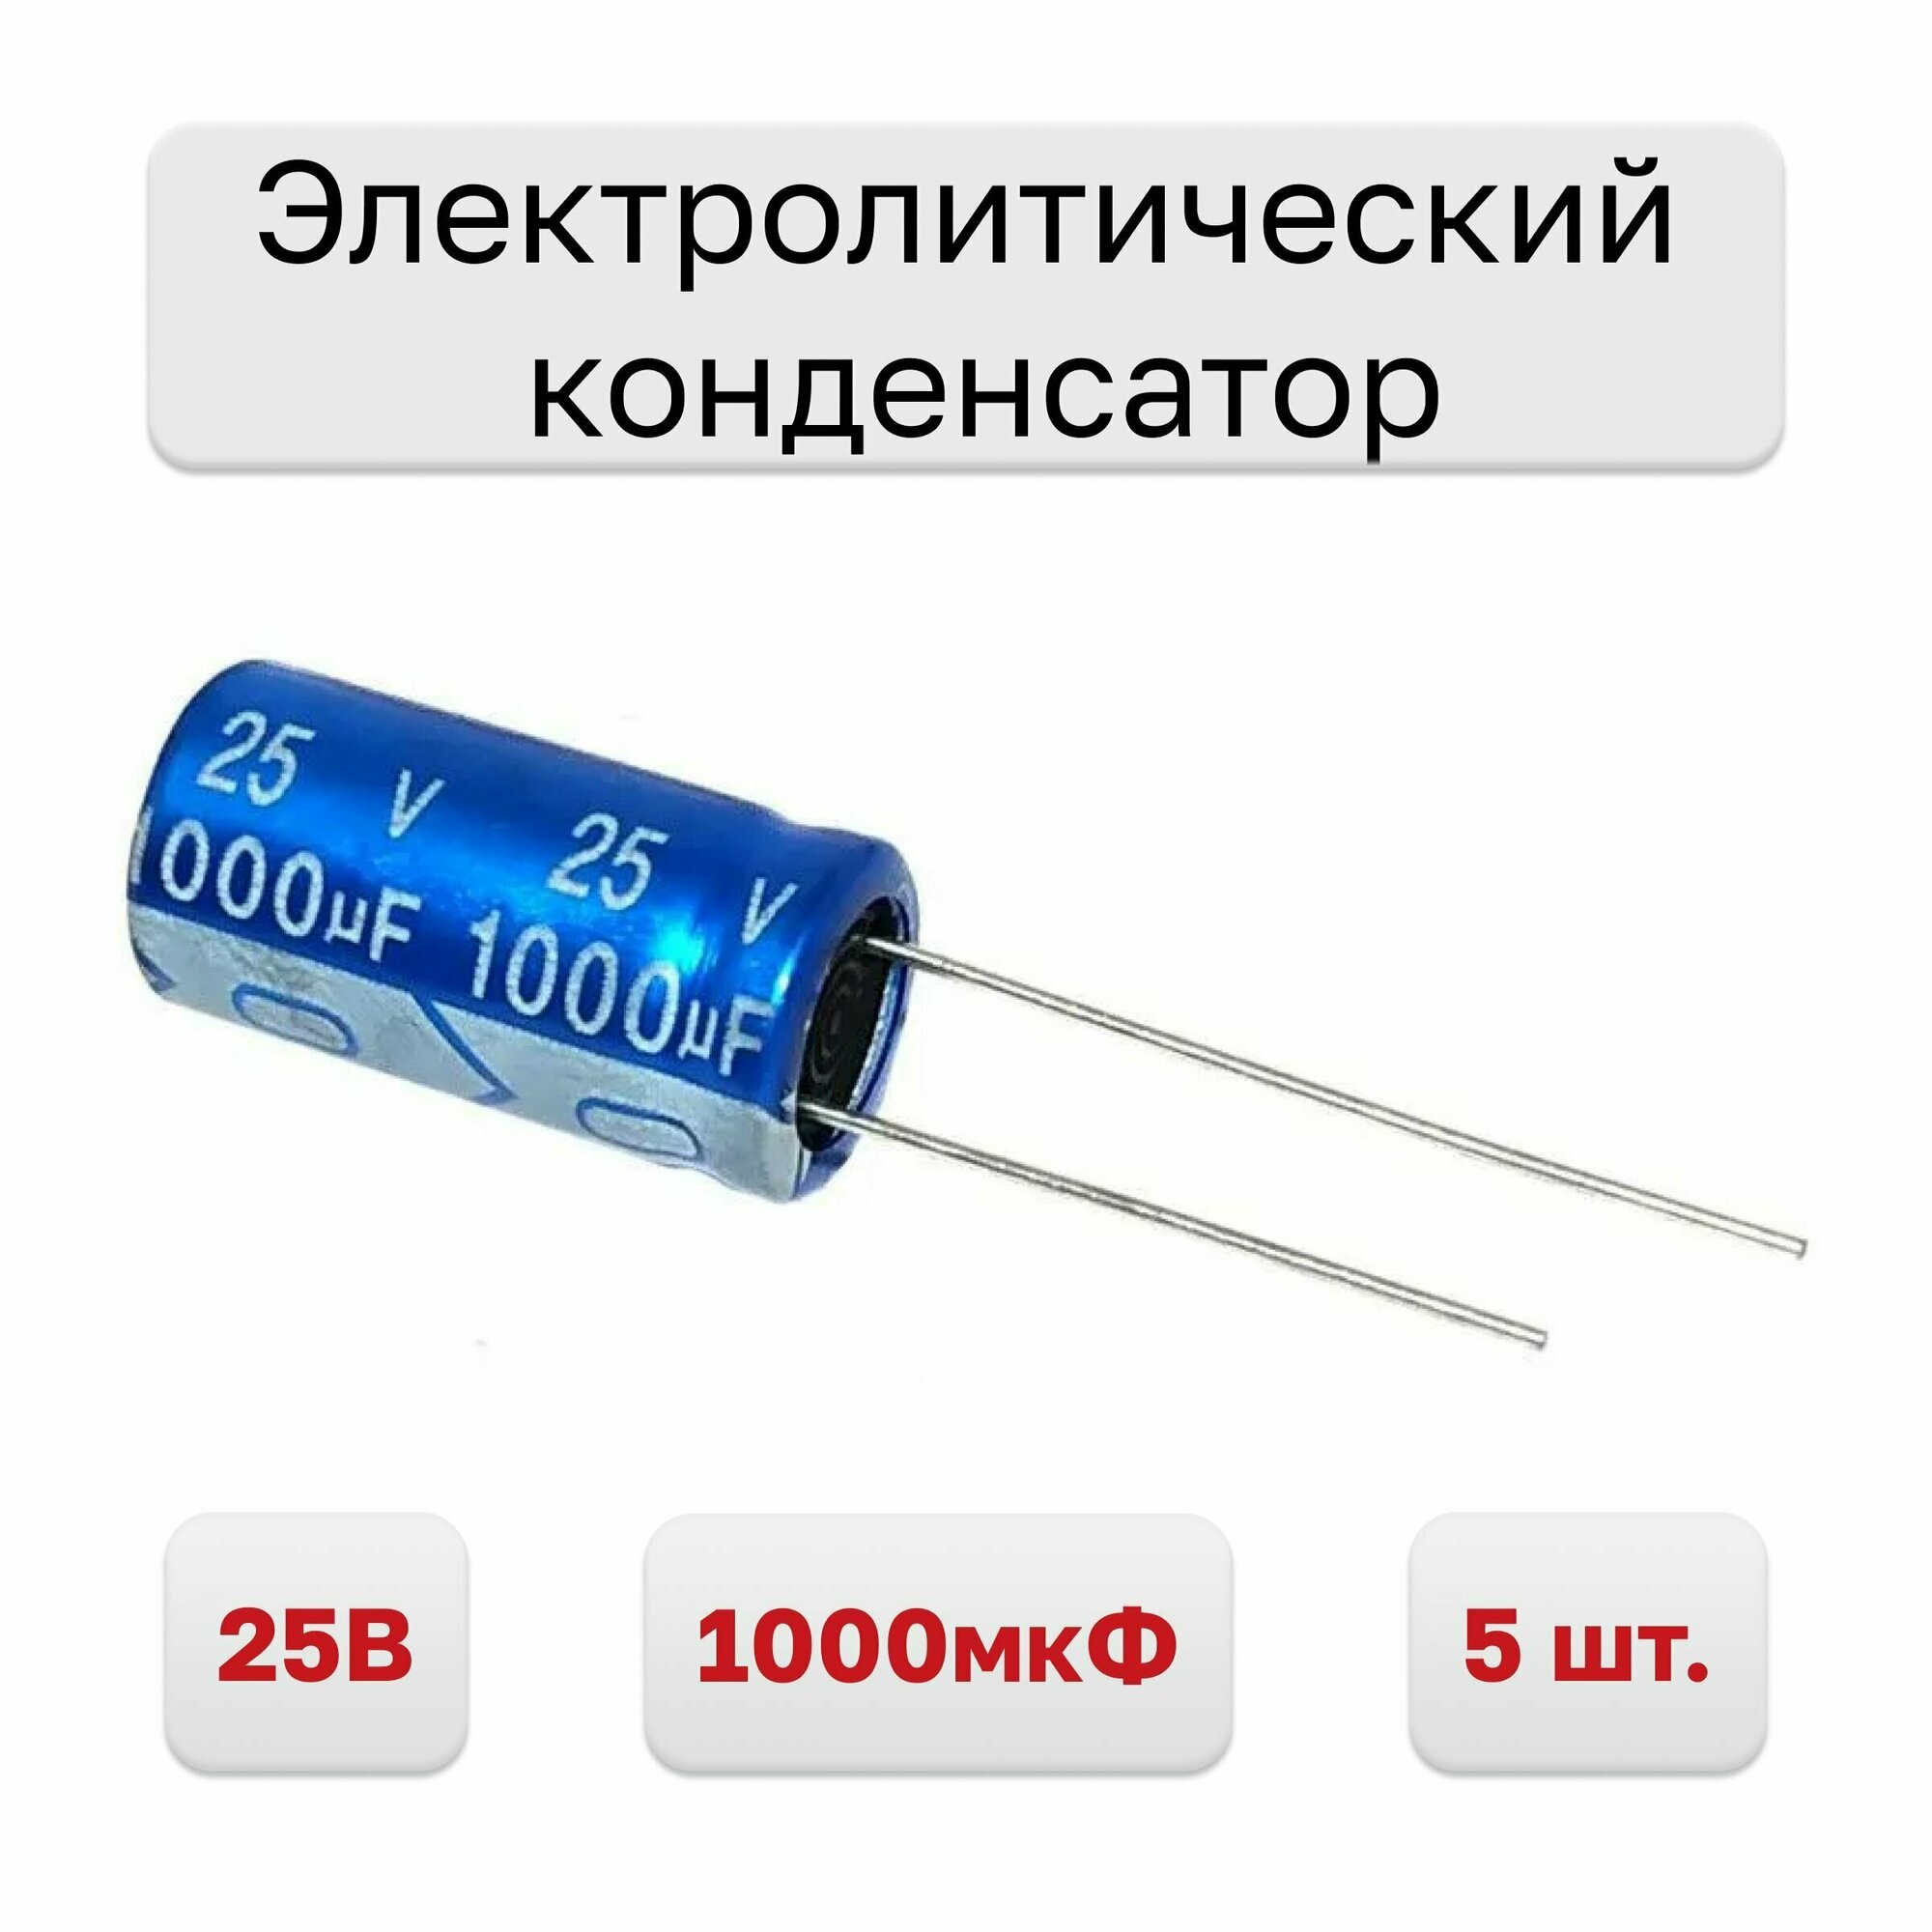 Конденсатор электролитический 25В 1000мкФ JRB1E102M05001000210000B 105C, 5 шт.